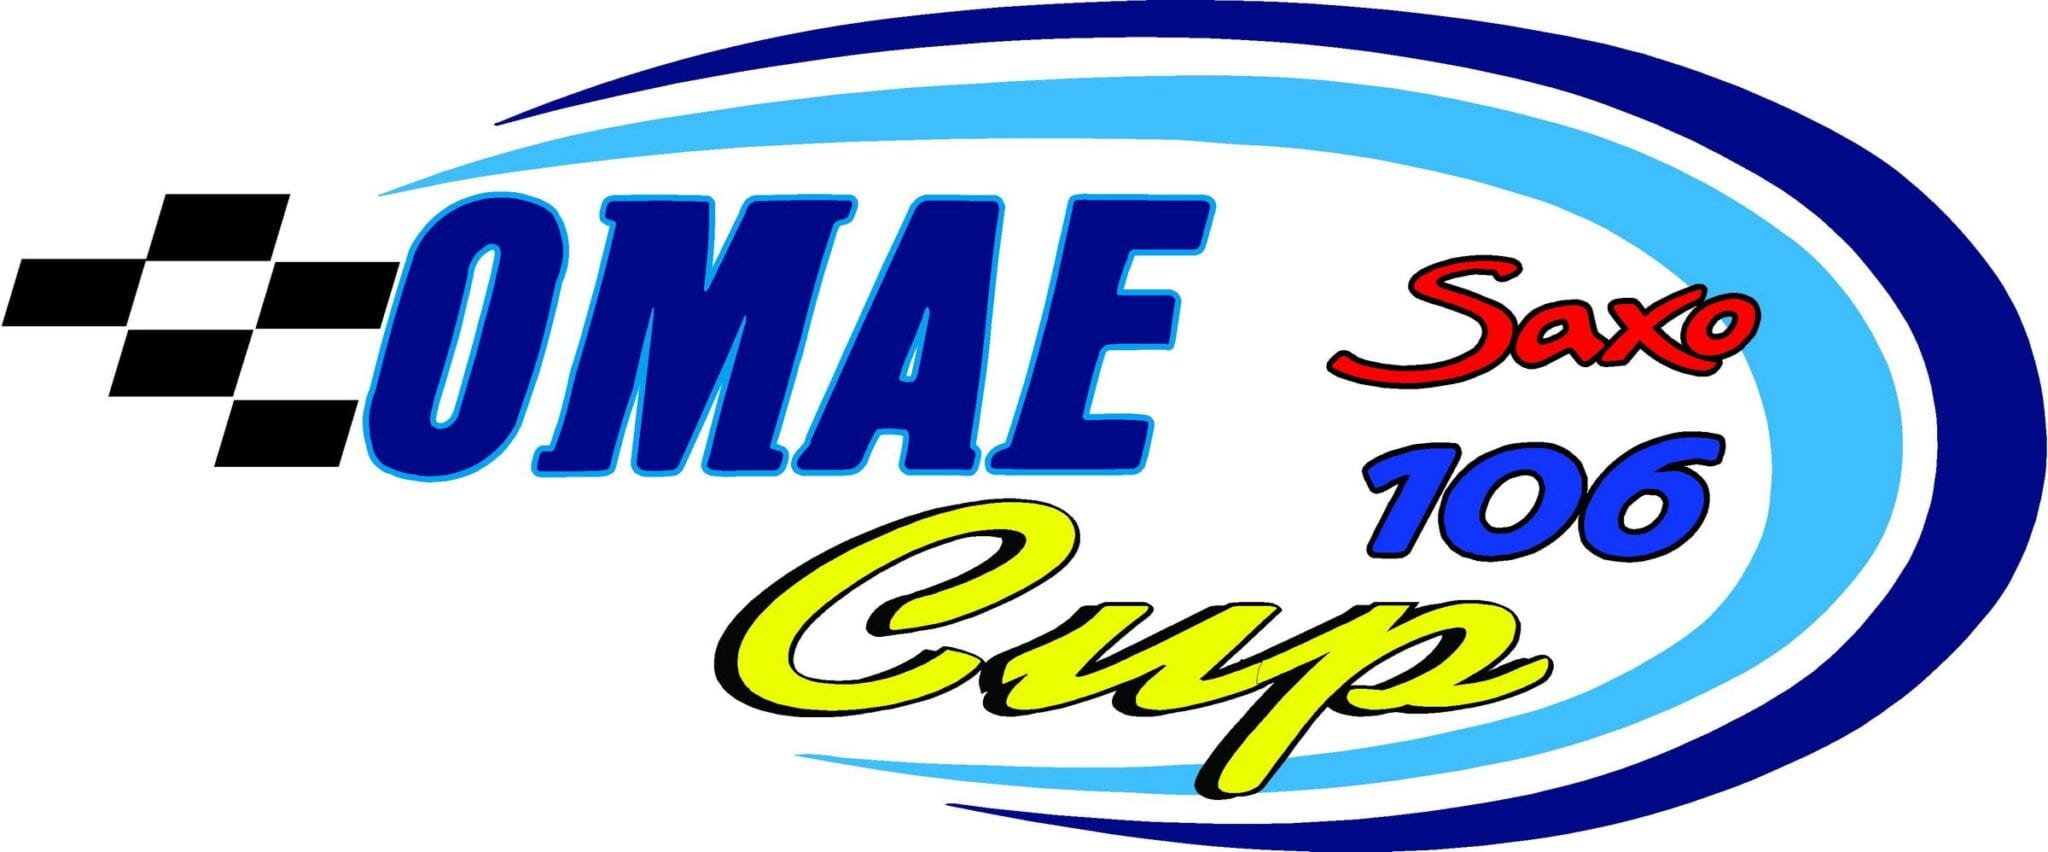 Την Προσεχή Παρασκευή 6 Μαρτίου 2015 ανακοινώνονται οι τελικές προδιαγραφές του «ΟΜΑΕ Saxo-106 Cup»